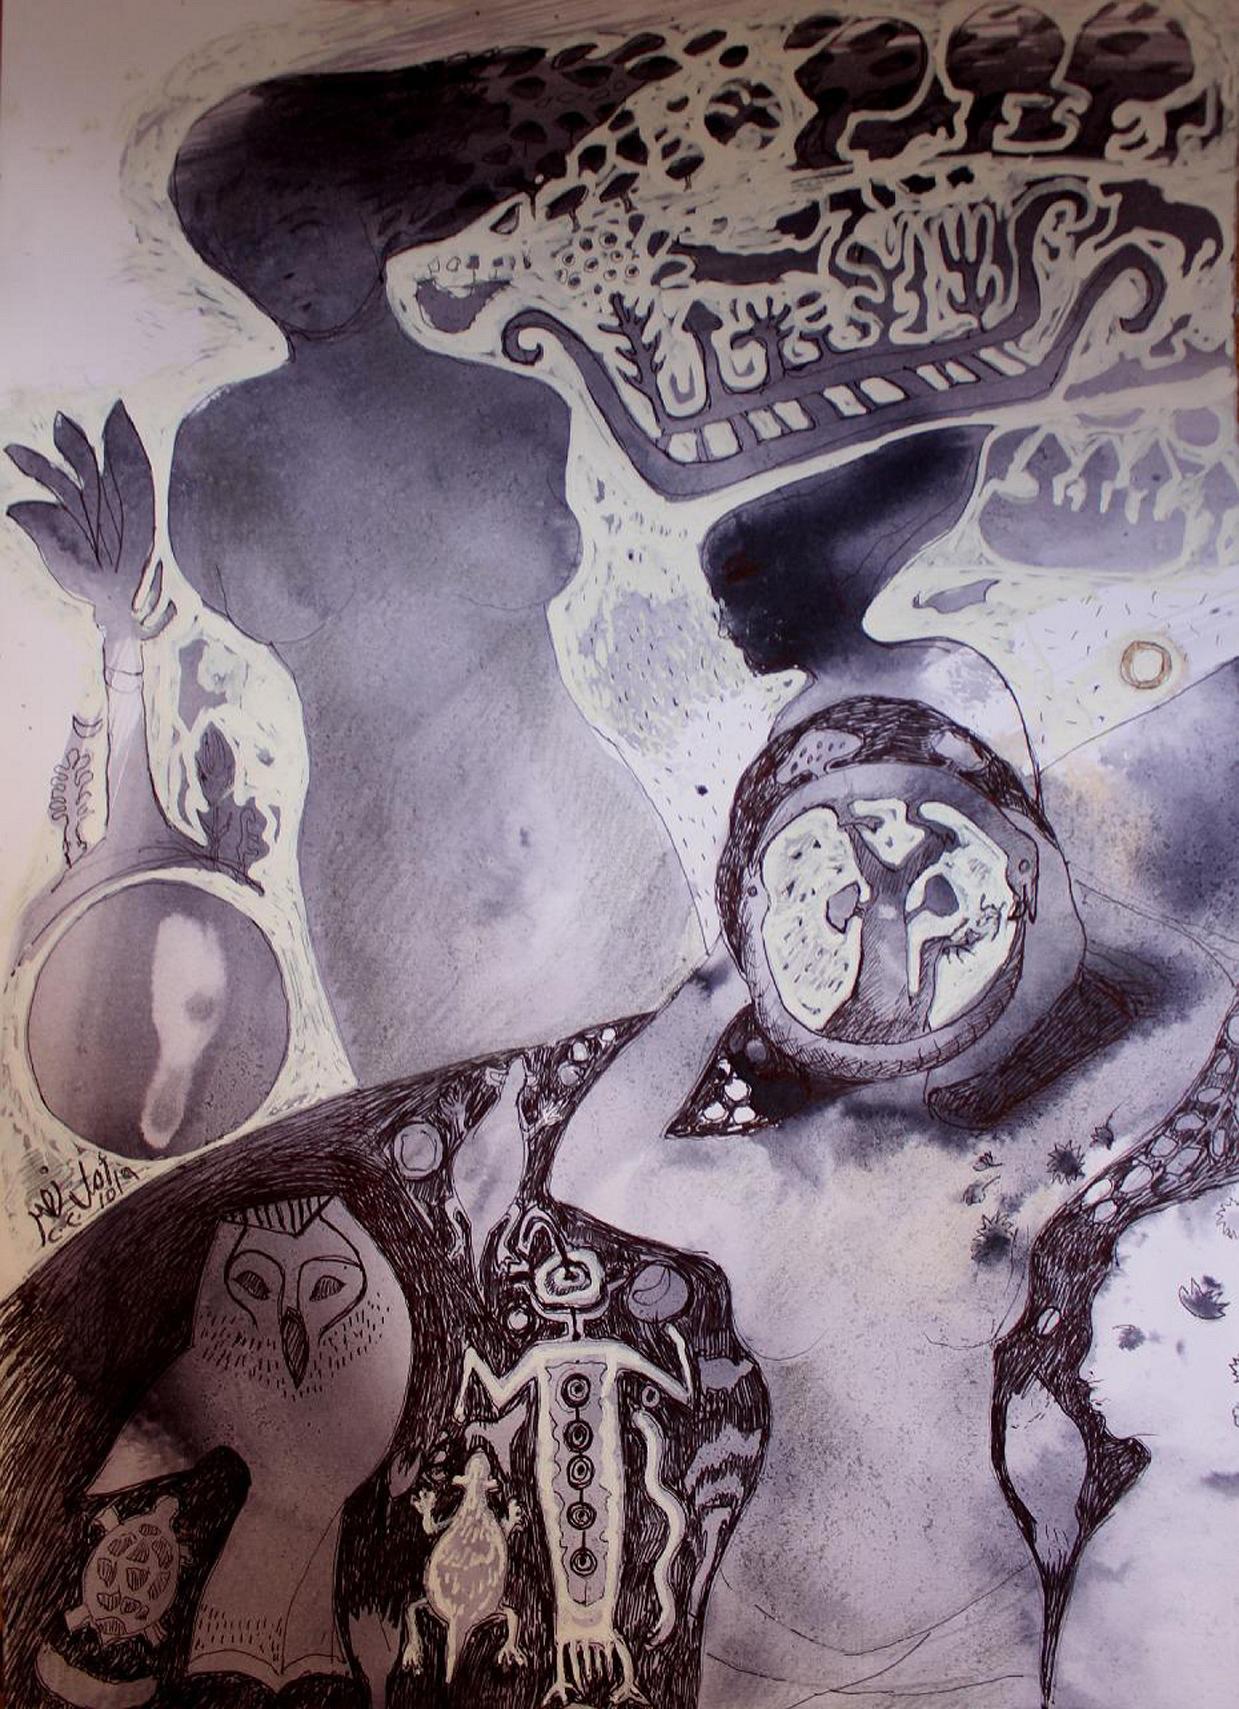 Abstraktes Gemälde „Ethereum“ 14" x 10" Zoll von Amal Nasr

Aquarell & Tinte auf Papier

Serie "New Horizon" (Neuer Horizont) 

Es ist ein ständiges Bestreben, die Freude an der Entdeckung und das Vergnügen der ersten Erfahrung wiederherzustellen,